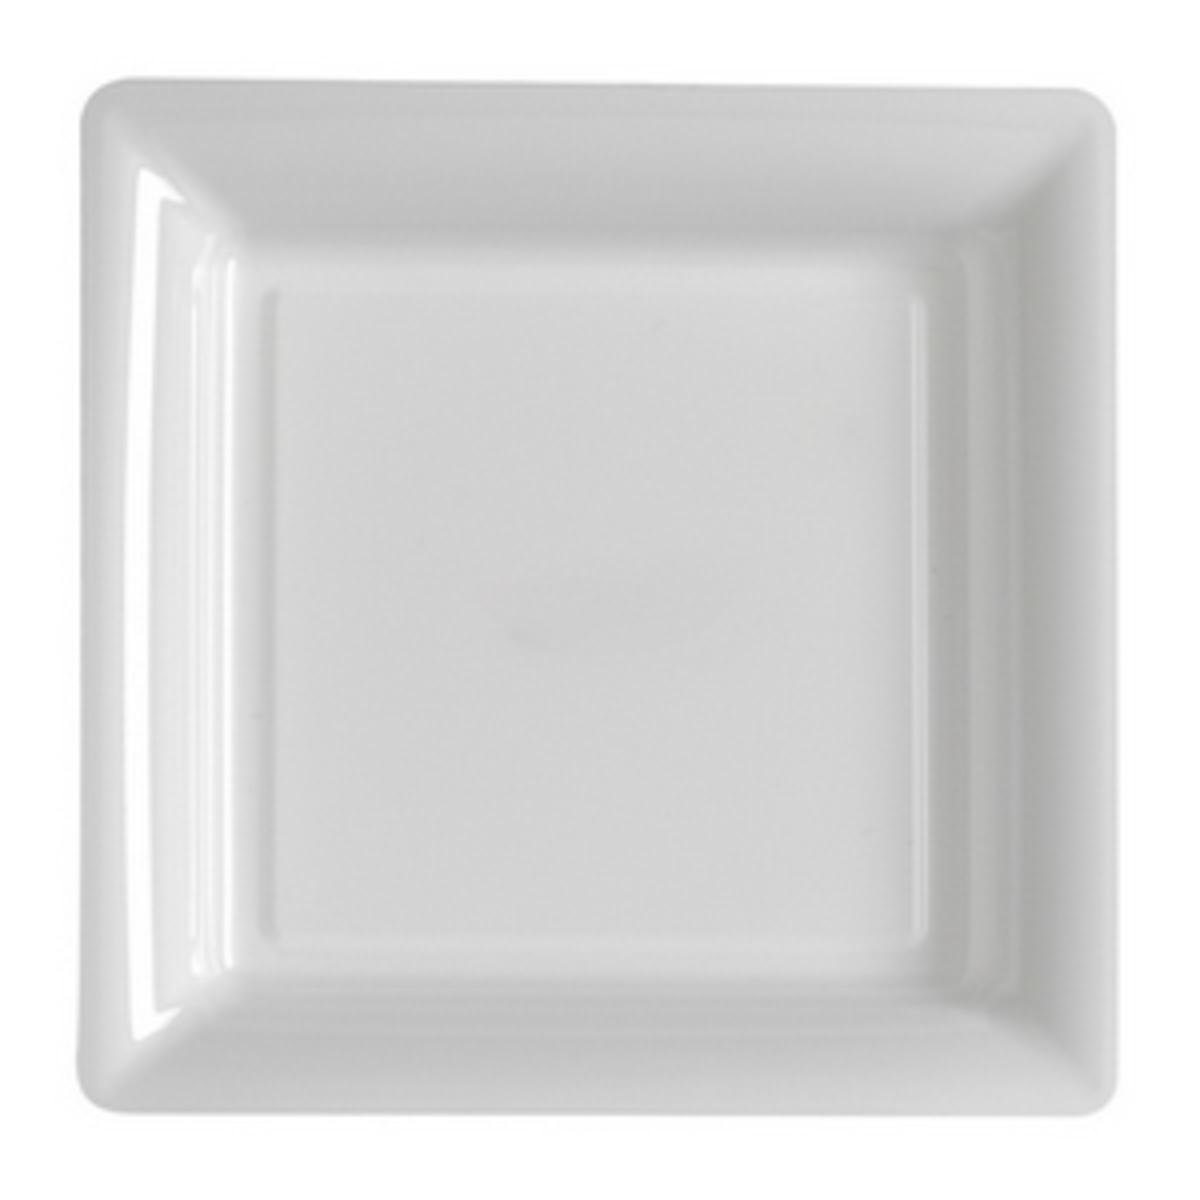 8 assiettes cartonnées carrées - L 23 x l 23 cm - Blanc